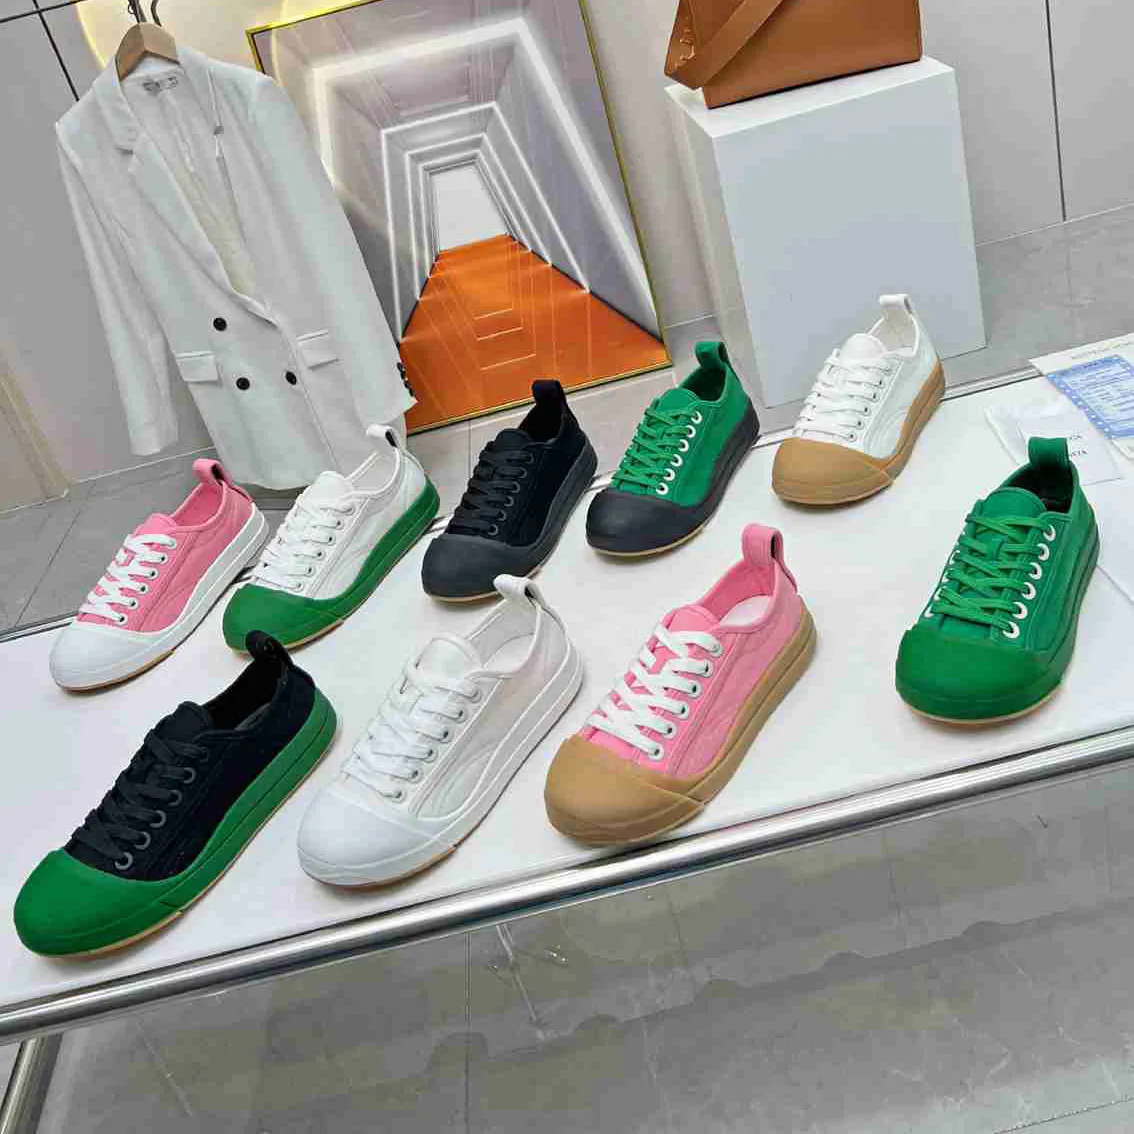 Novo designer de verão Vulcan tênis masculino e feminino sola de borracha casual sapatos rasos Sapato de skate confortável sapatos casuais Periquito branco óptico tamanho 35-45 com caixa